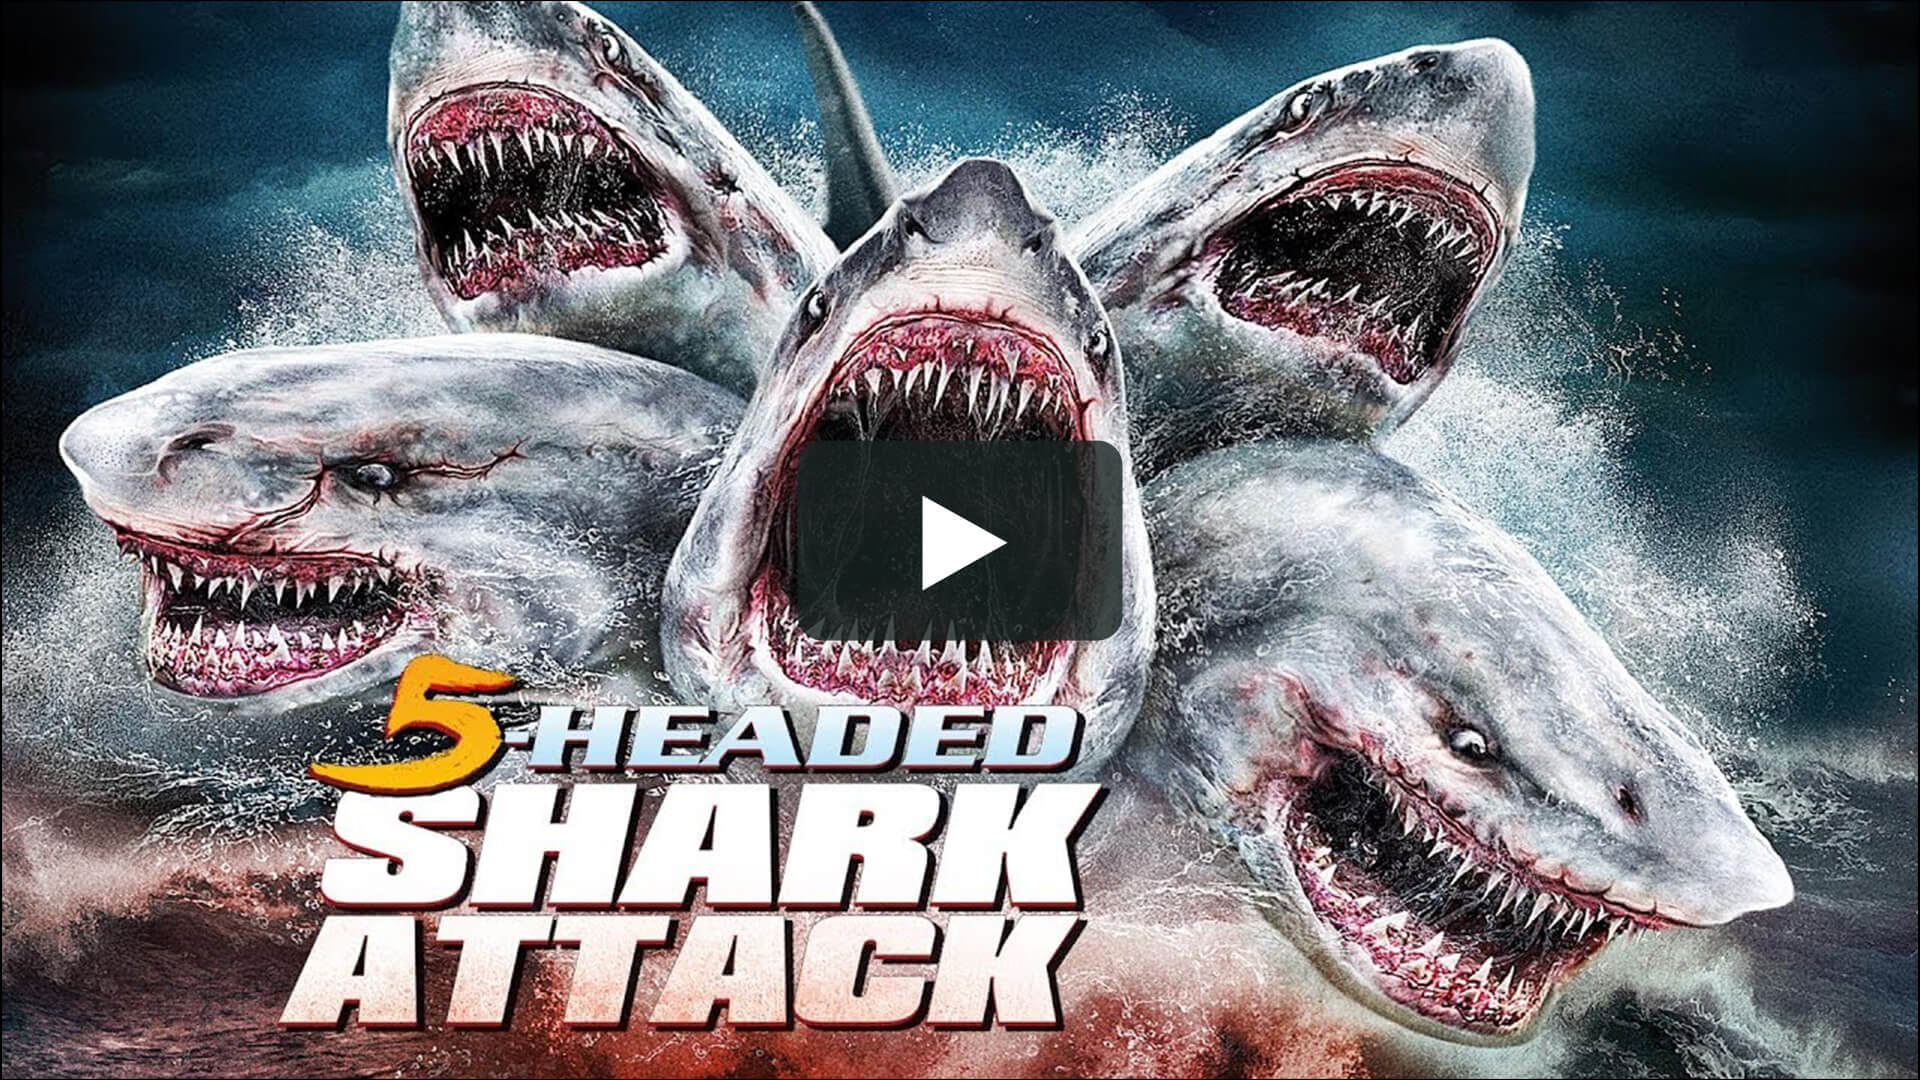 5 Headed Shark Attack - 奪命五頭鯊